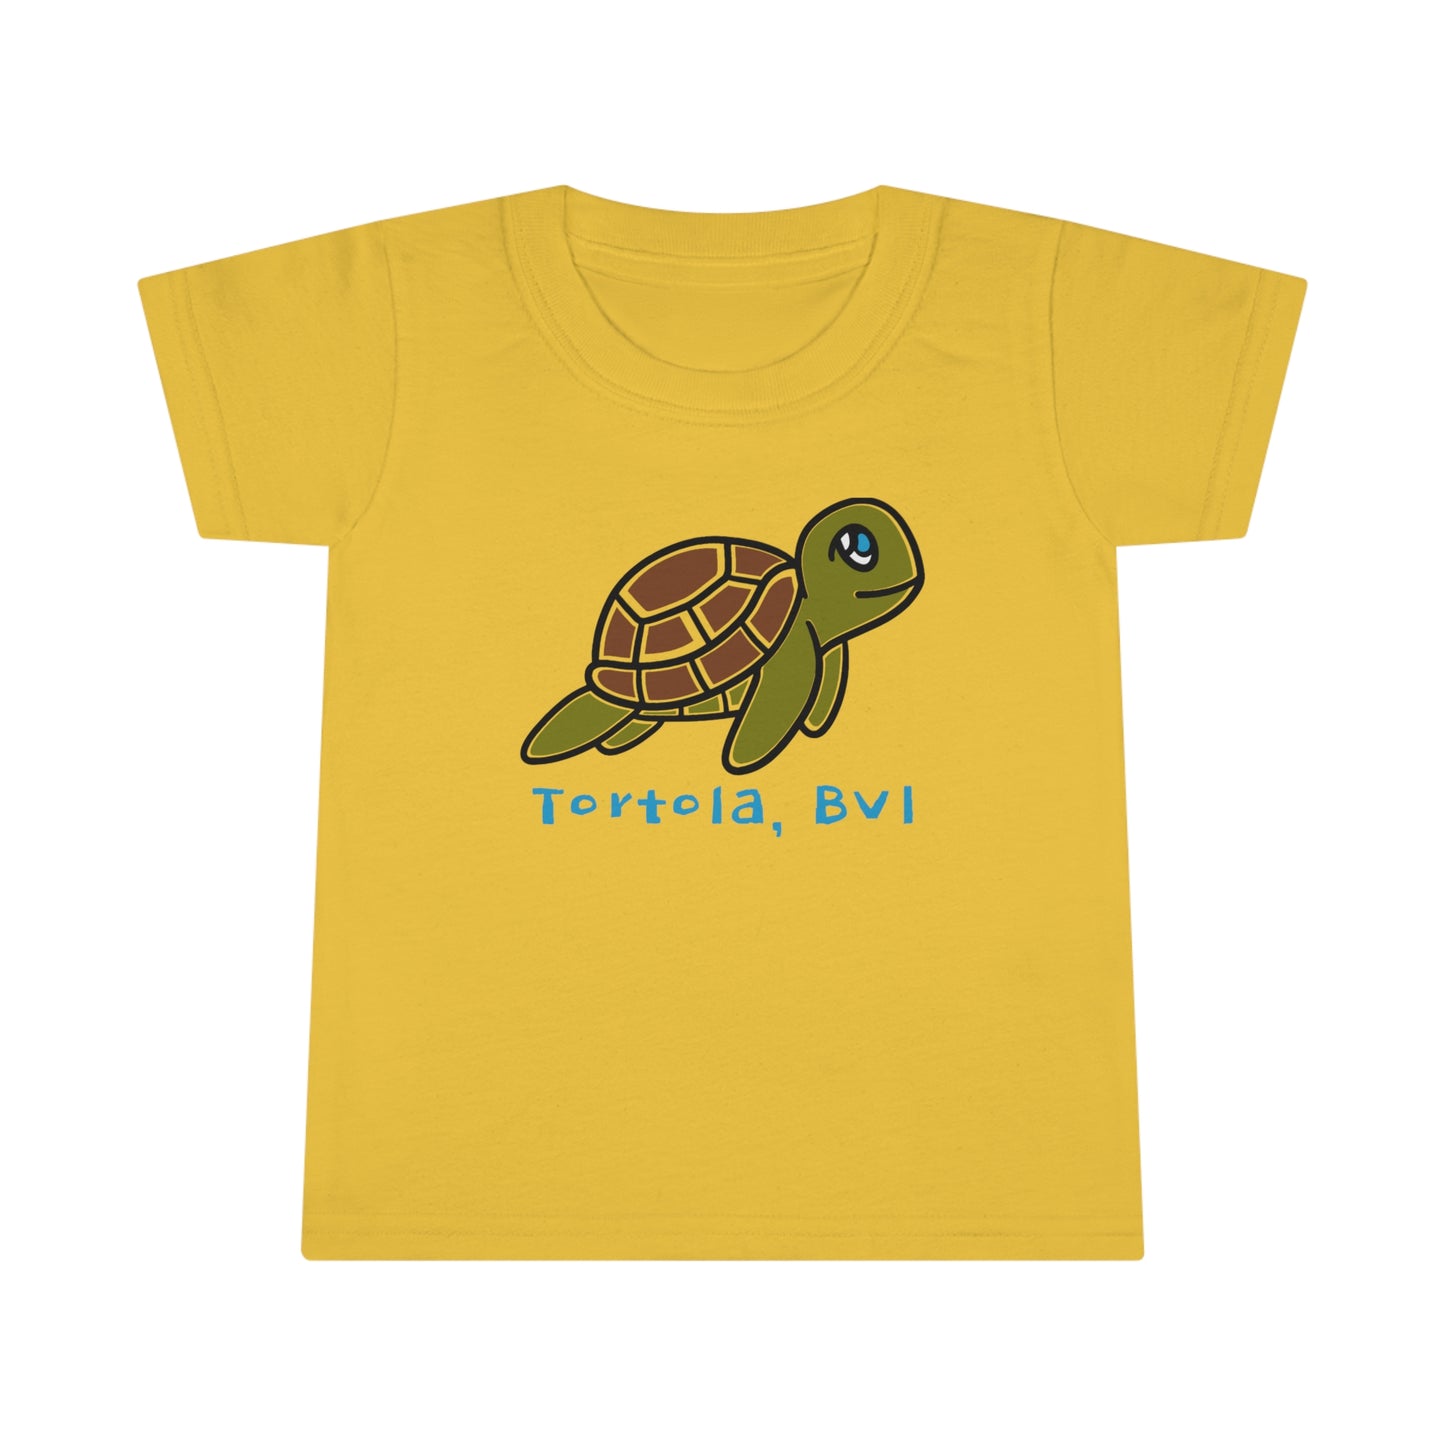 "Turtle | Tortola" Toddler T-shirt